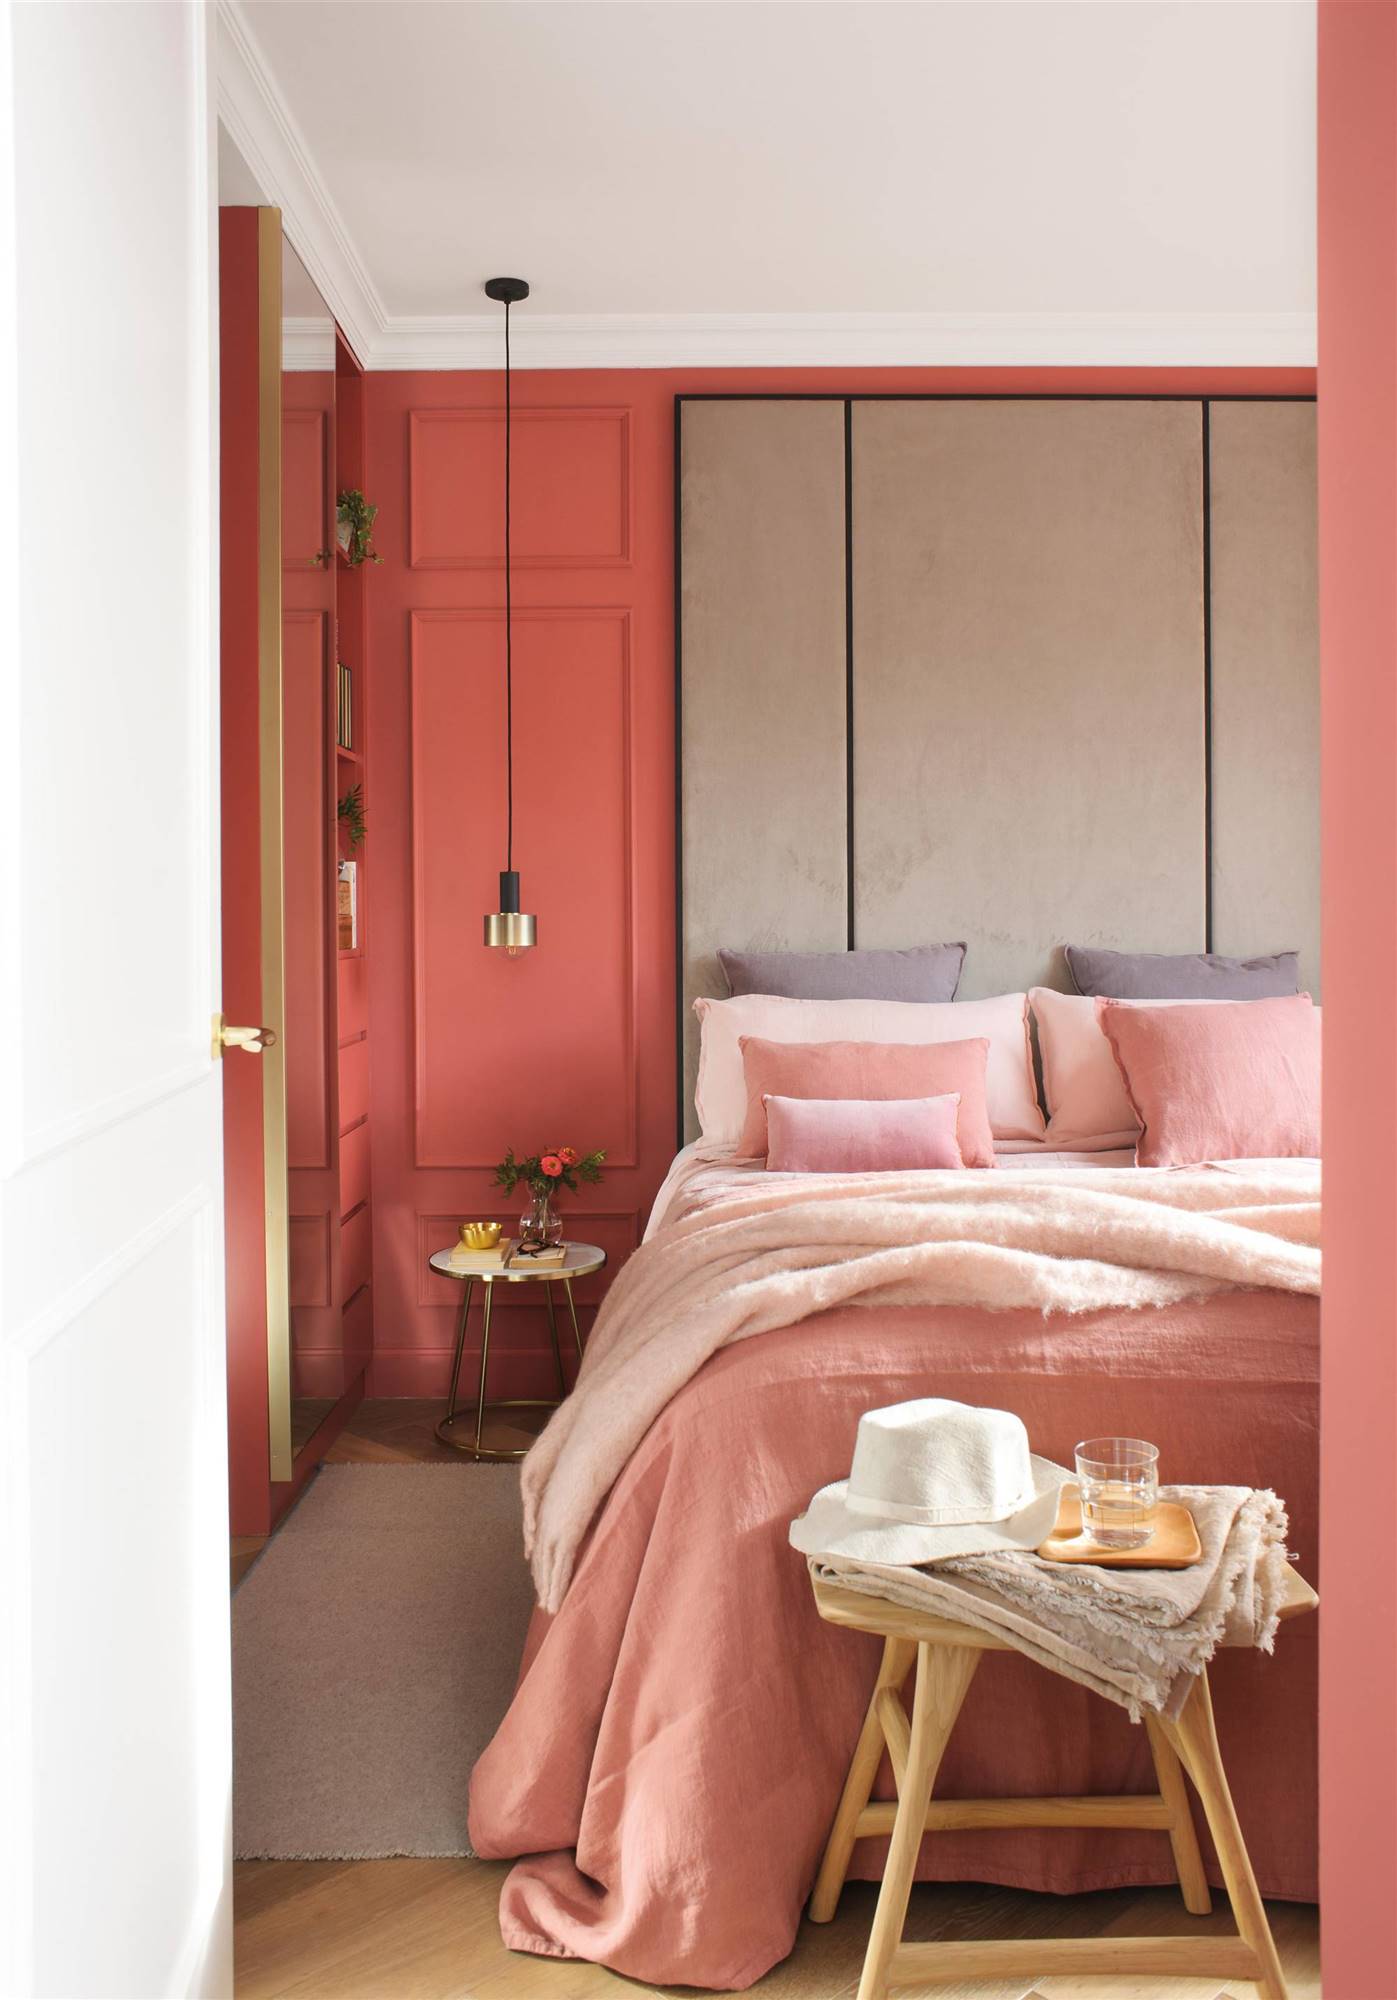 Dormitorio arena rojiza con pintura de pared rosa salmón, molduras y cabecero tapizado. 